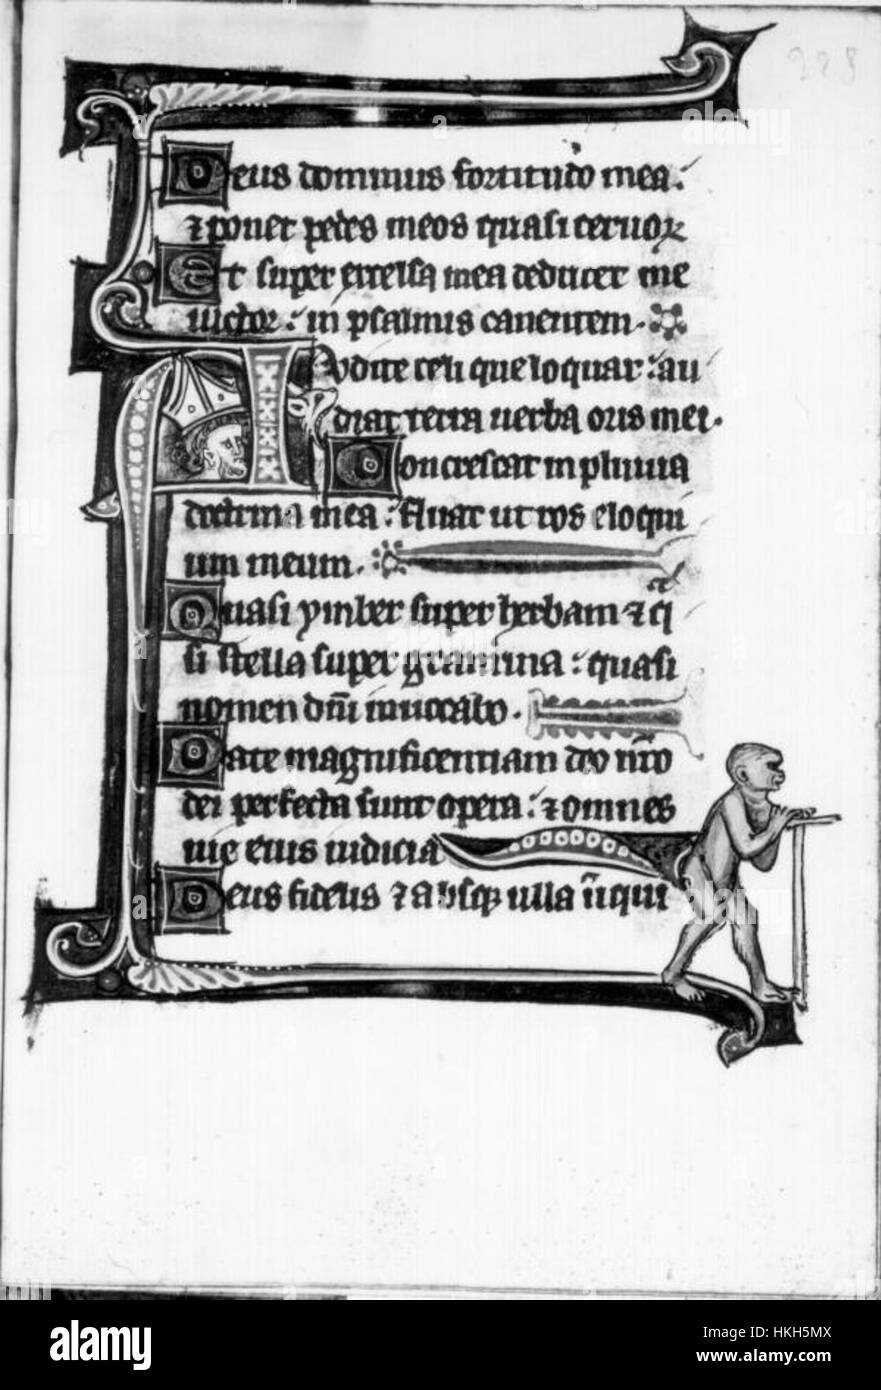 Il vescovo la testa racchiusa nella lettera A, formata da un drago con un ape sulla punta della coda Foto Stock